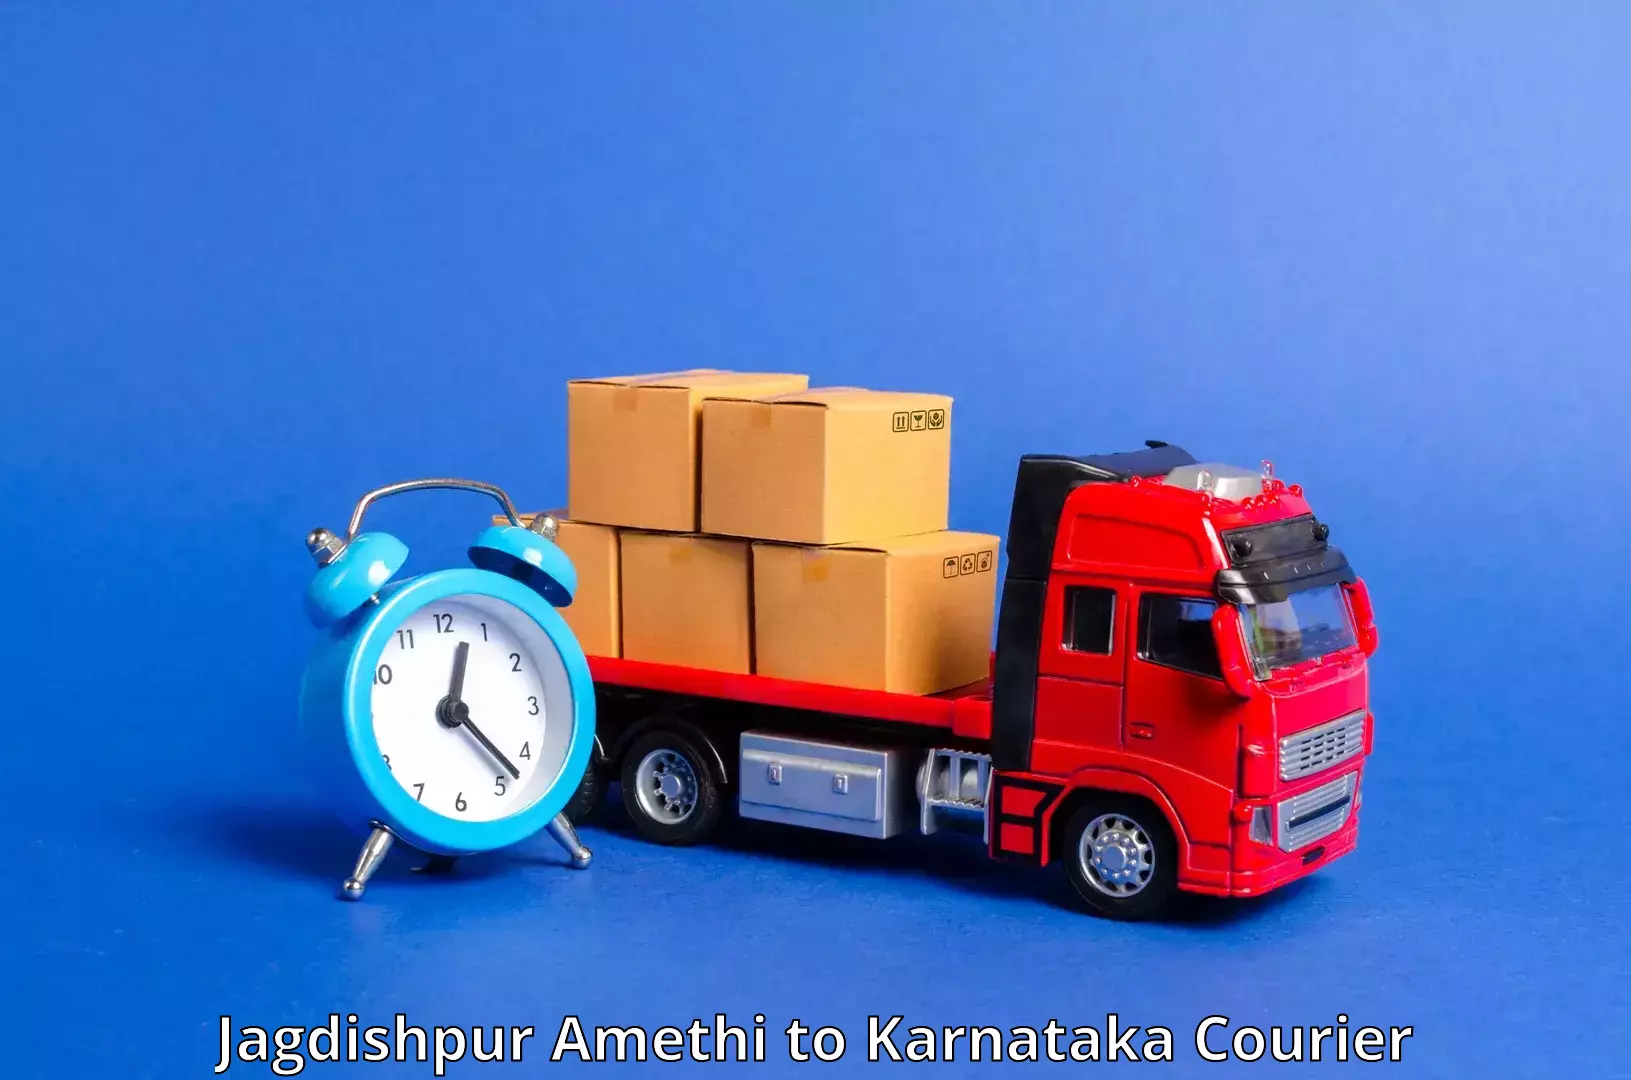 Urgent courier needs Jagdishpur Amethi to Tarikere